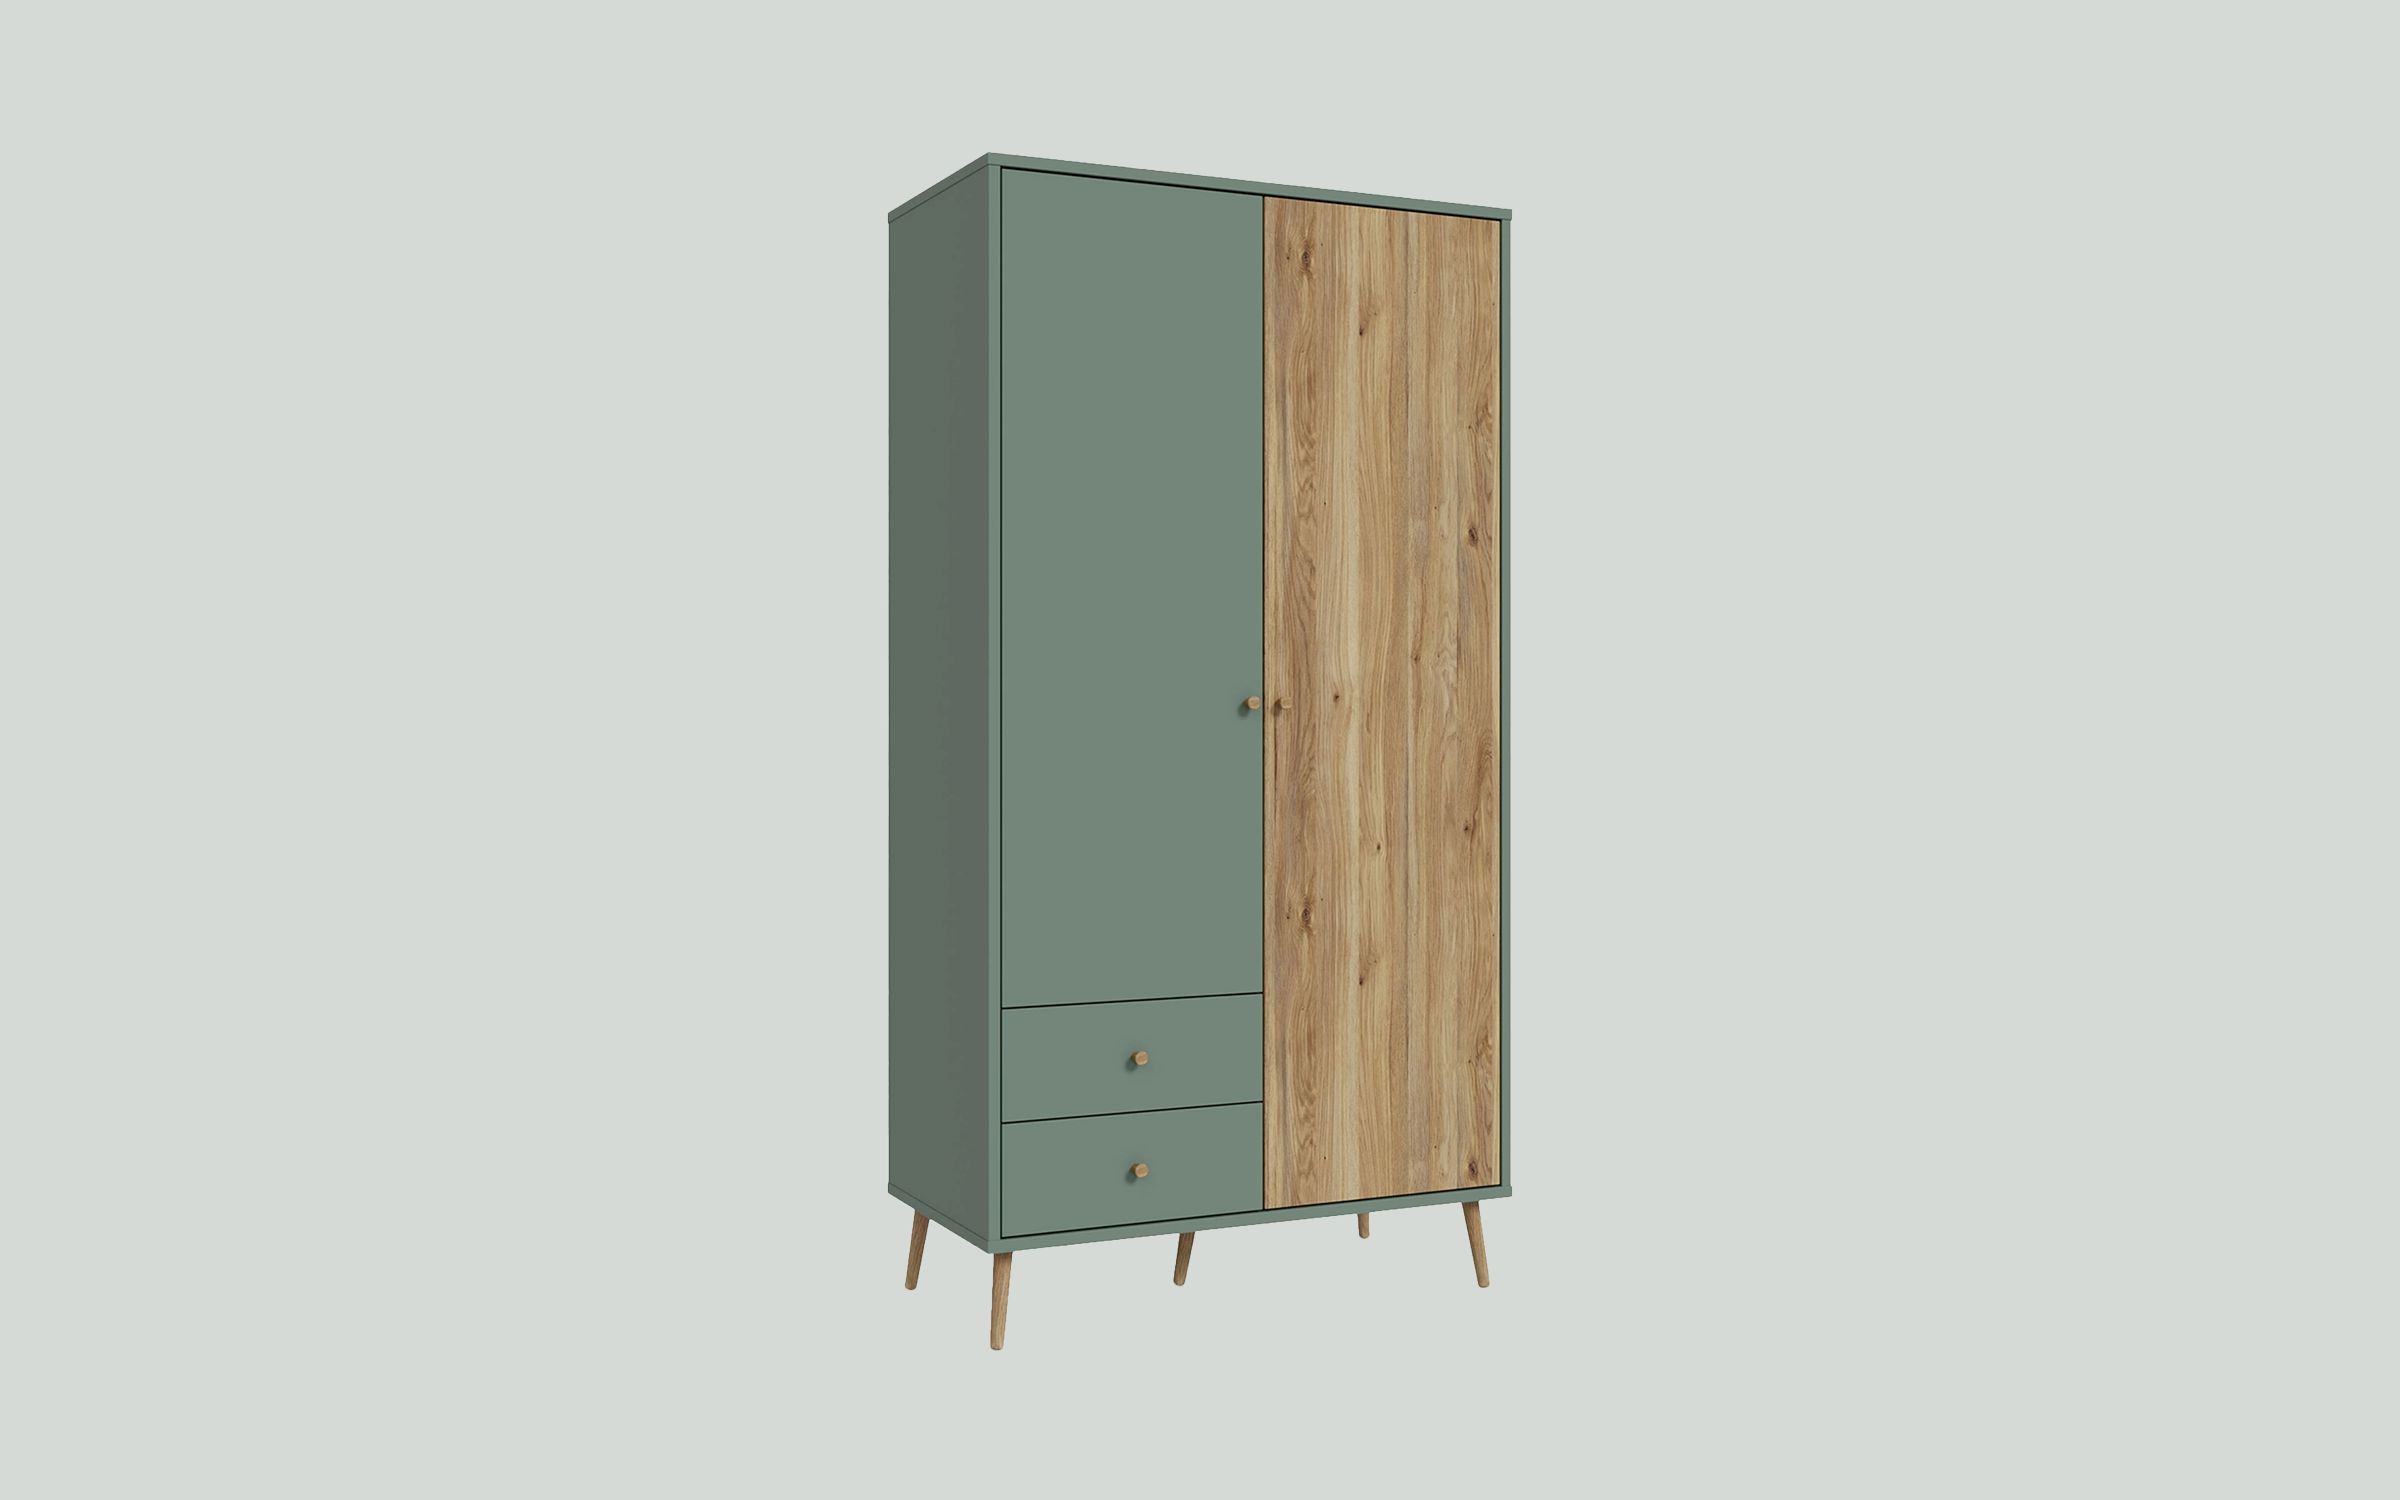 EasyKlix Harllson 2 Door Wardrobe with 2 Drawers, Green/Oak